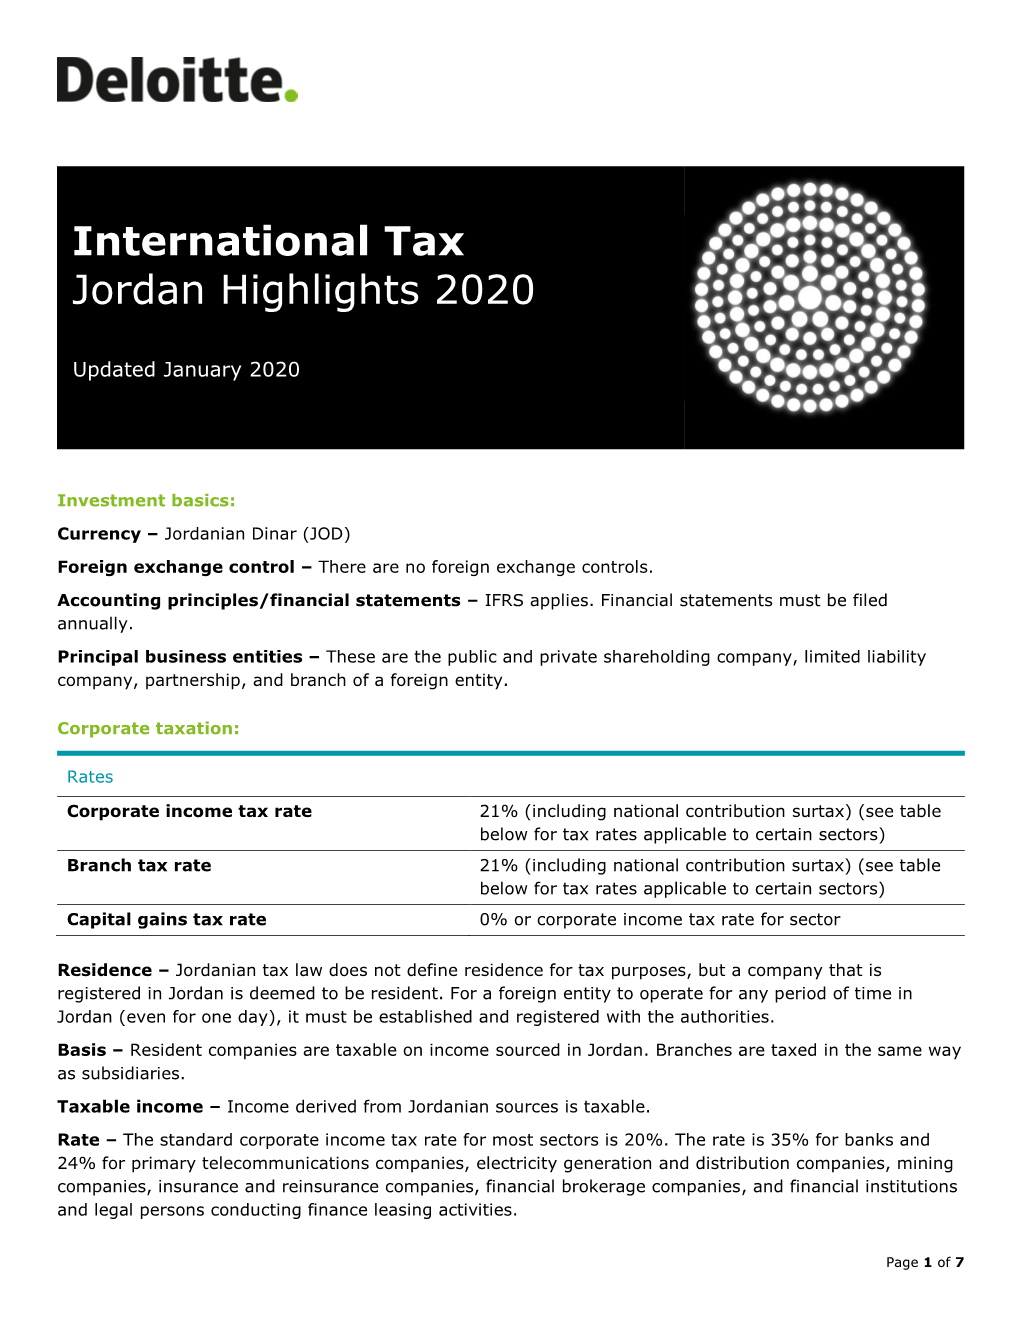 International Tax Jordan Highlights 2020